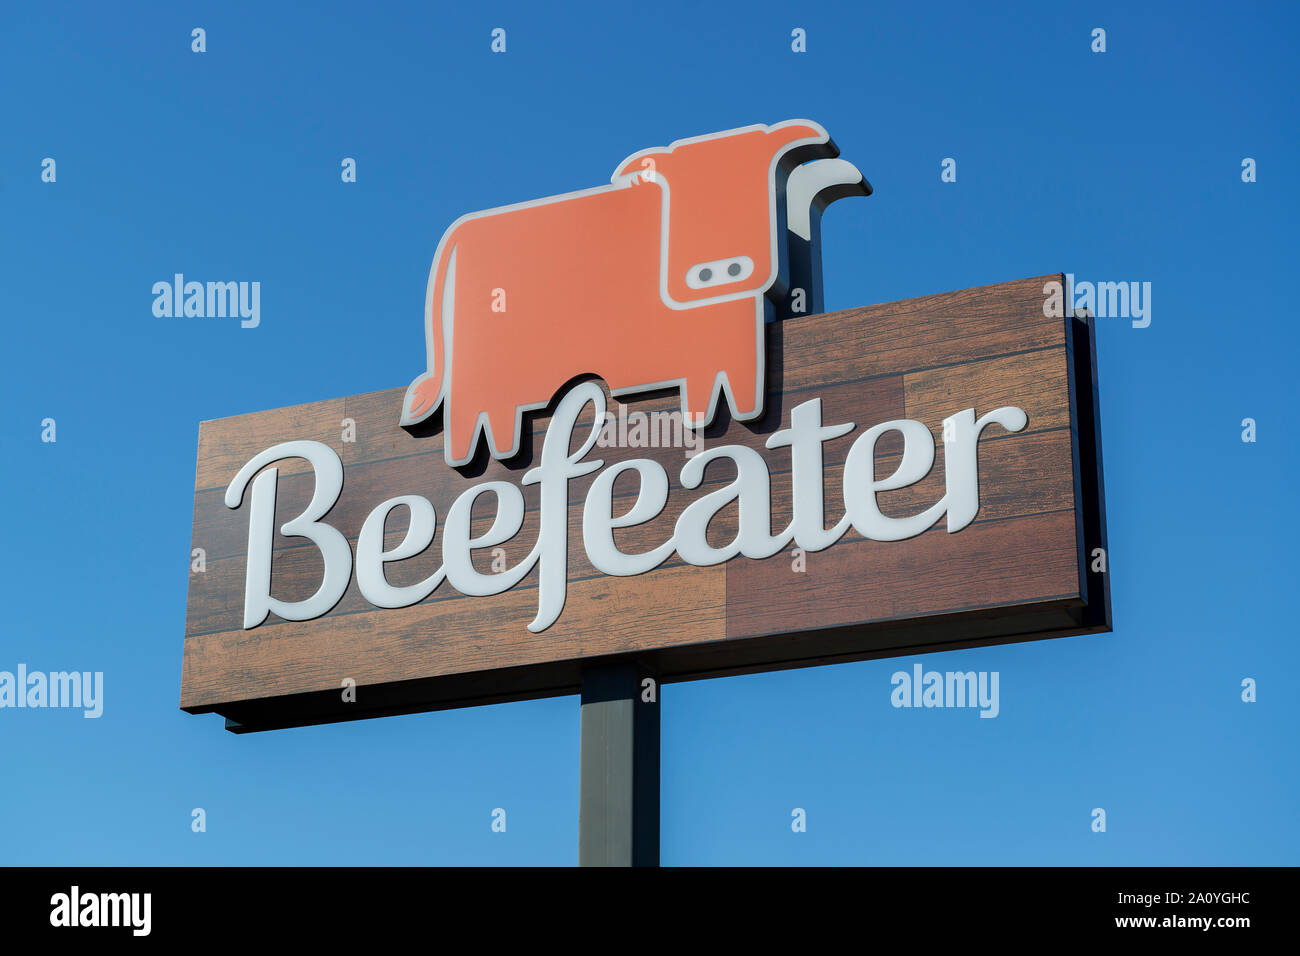 Los carteles indicando una sucursal de la cadena de restaurantes Beefeater. Foto de stock